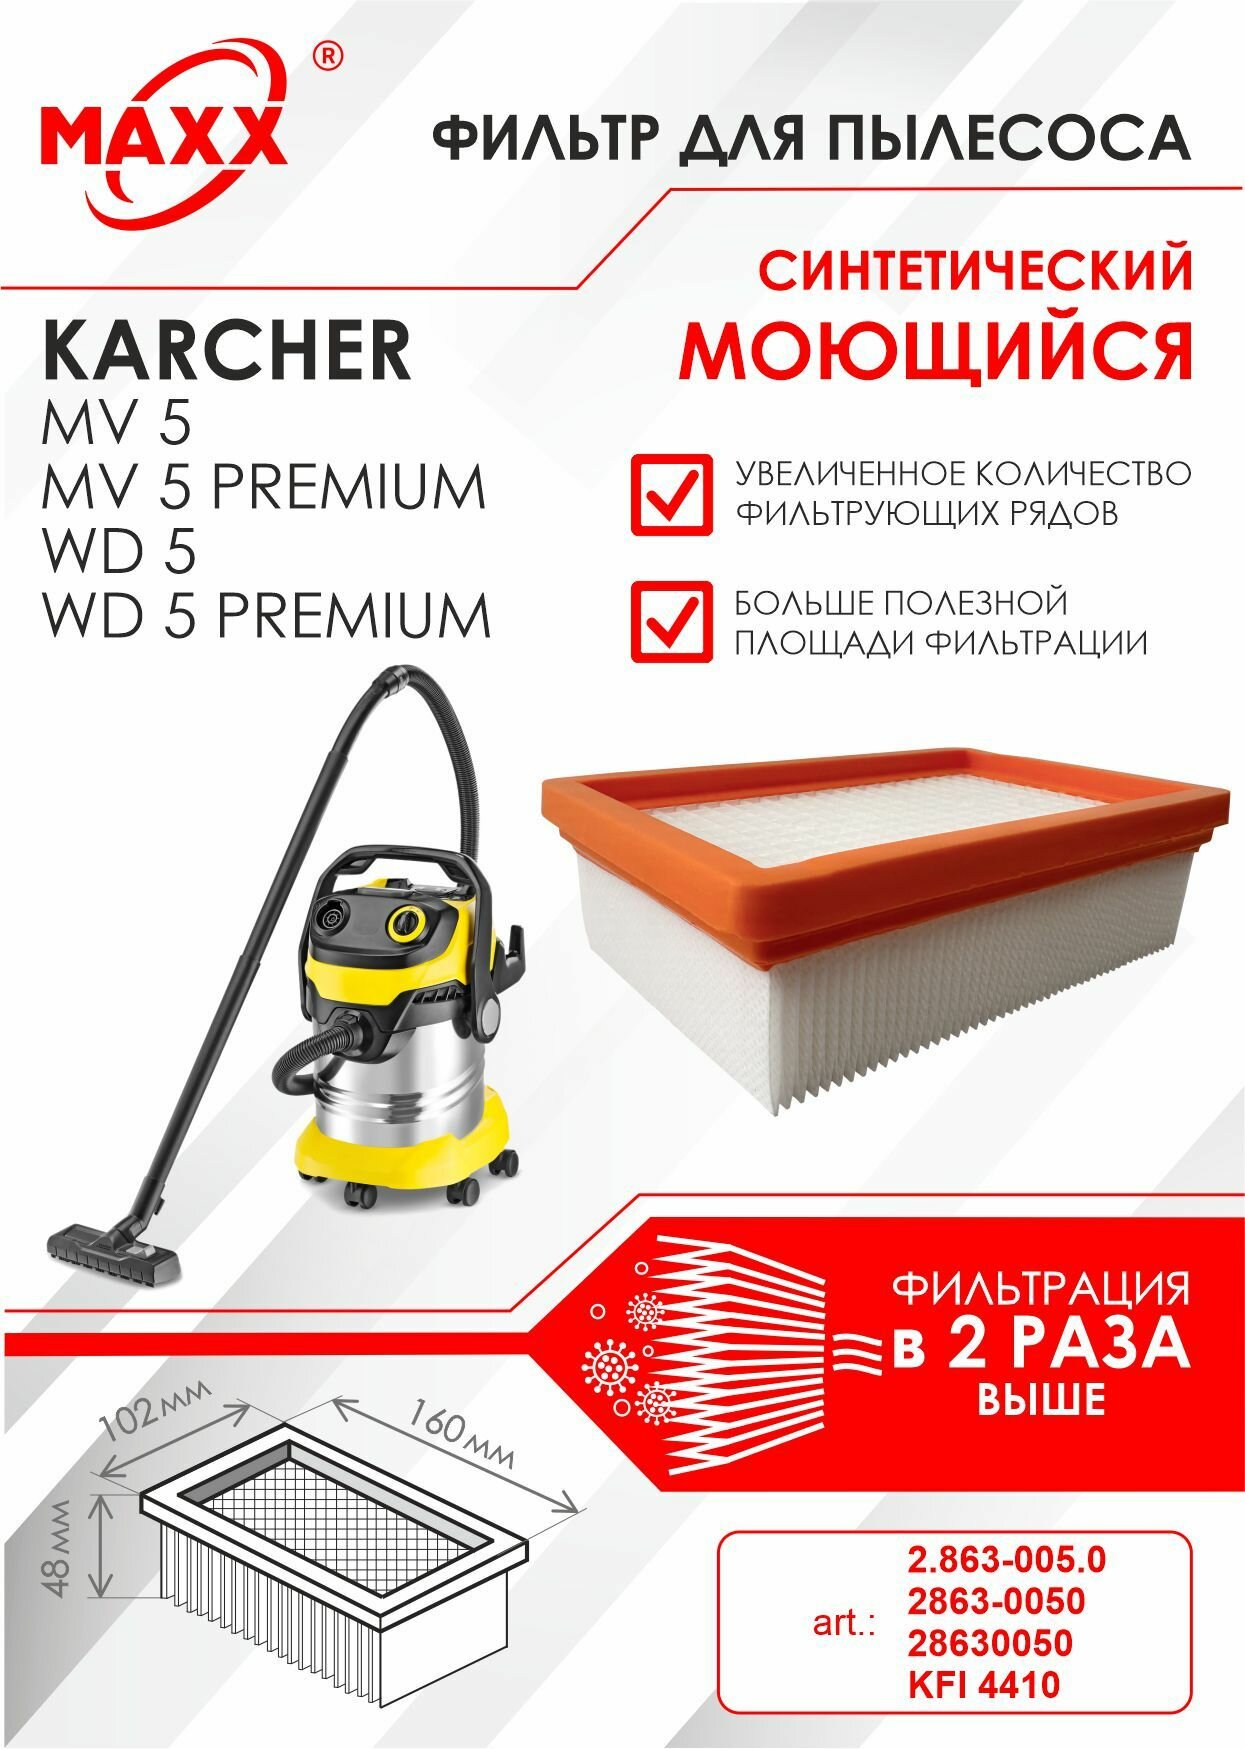 Плоский складчатый фильтр синтетический моющийся для пылесоса Karcher MV 5 MV 5 Premium Karcher WD 5 WD 5 Premium